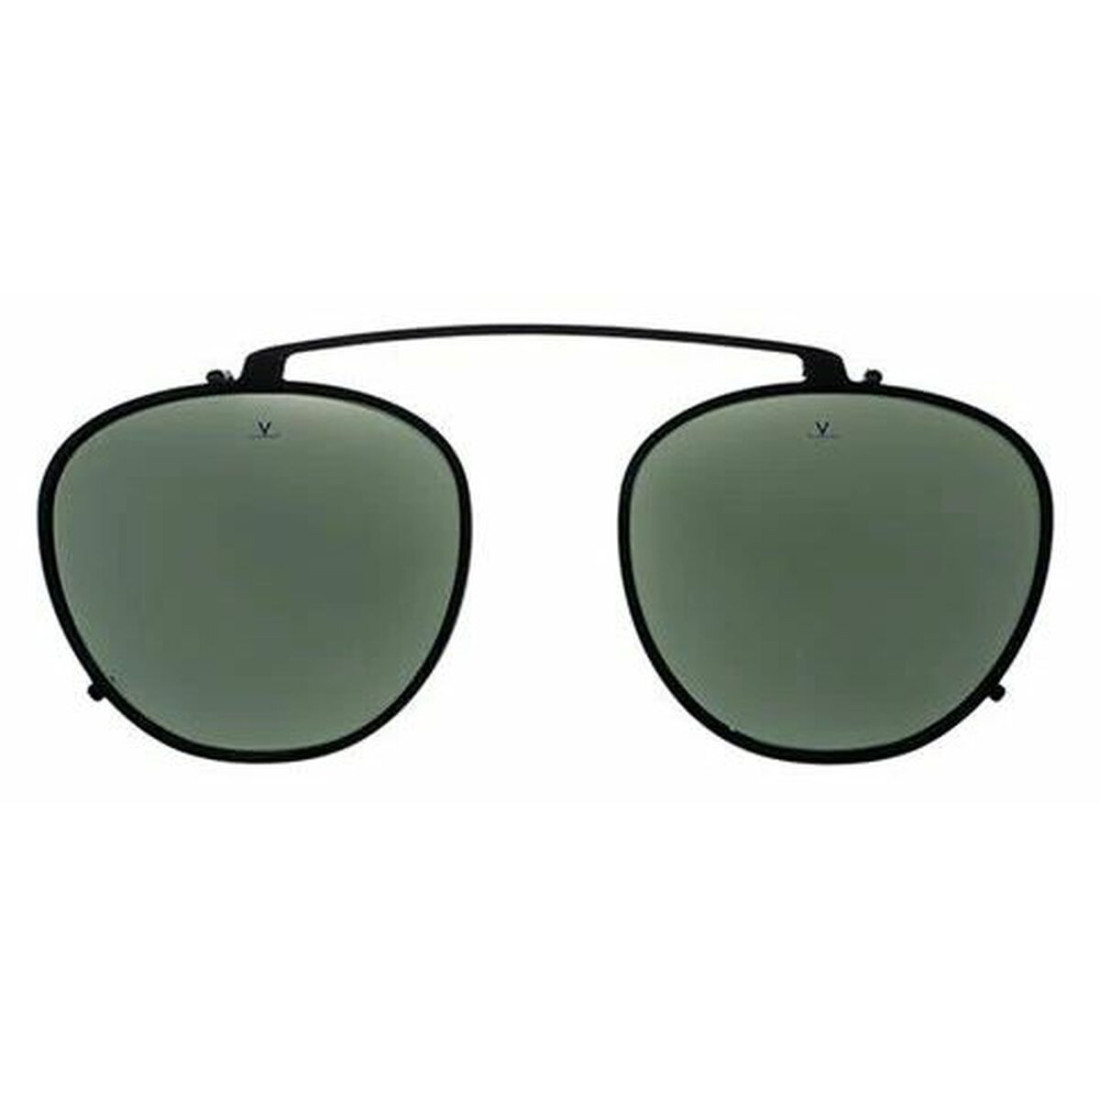 Unisex saulės akiniai su spaustuku Vuarnet VD190100021121